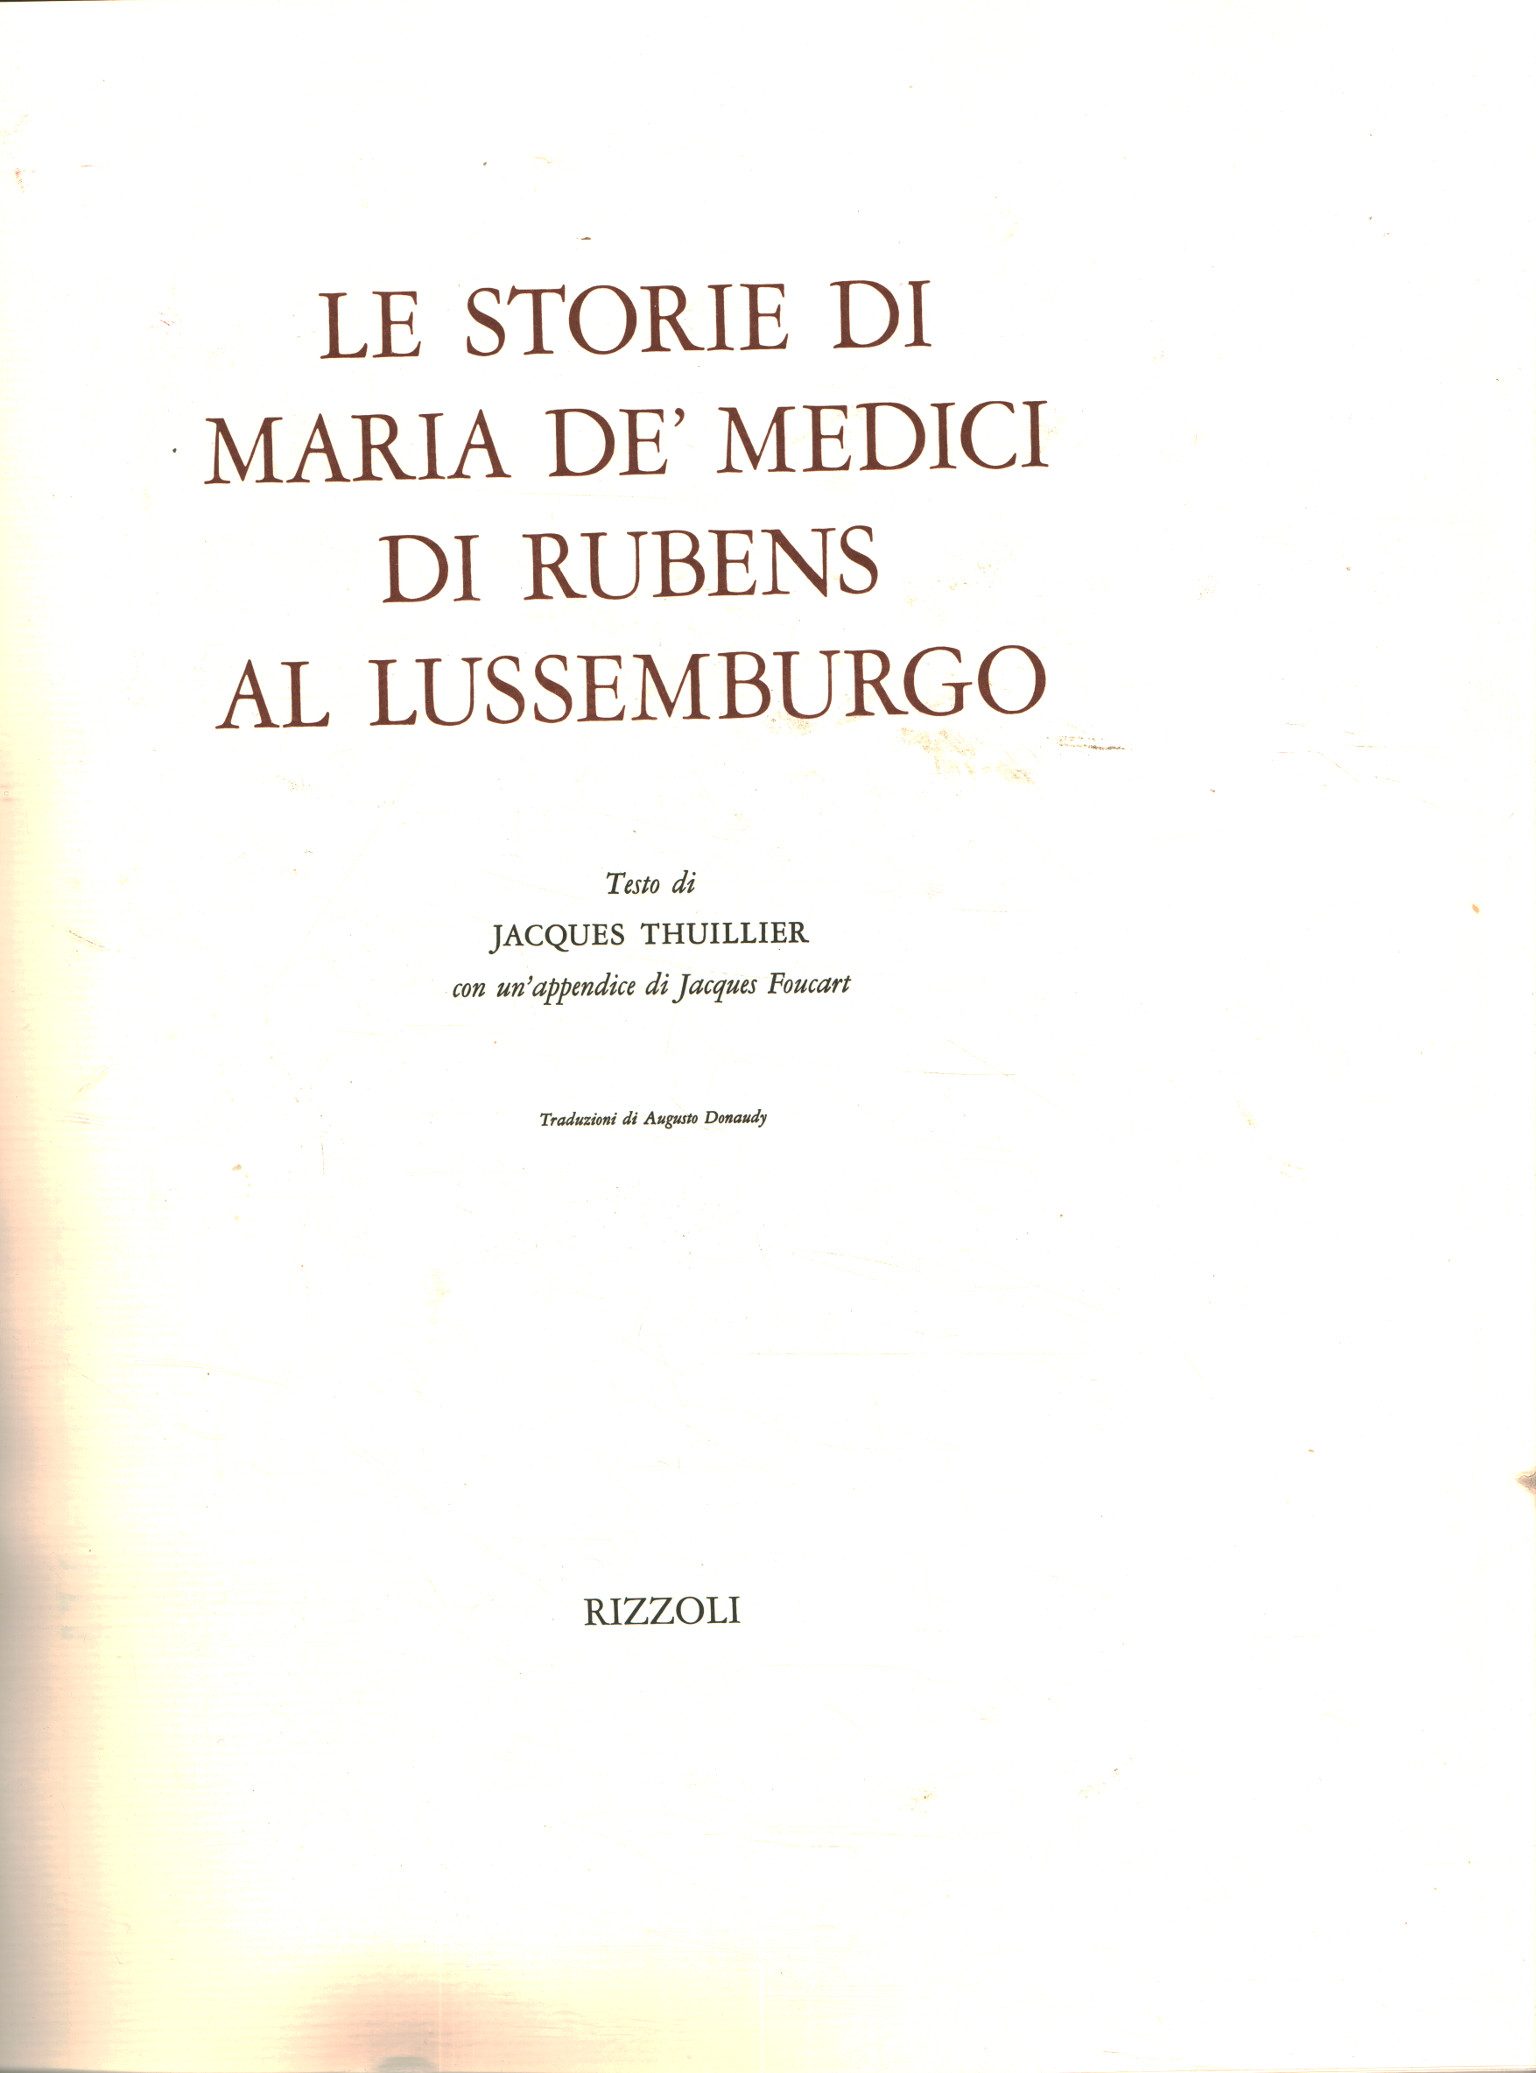 Le storie di Maria De' Medici